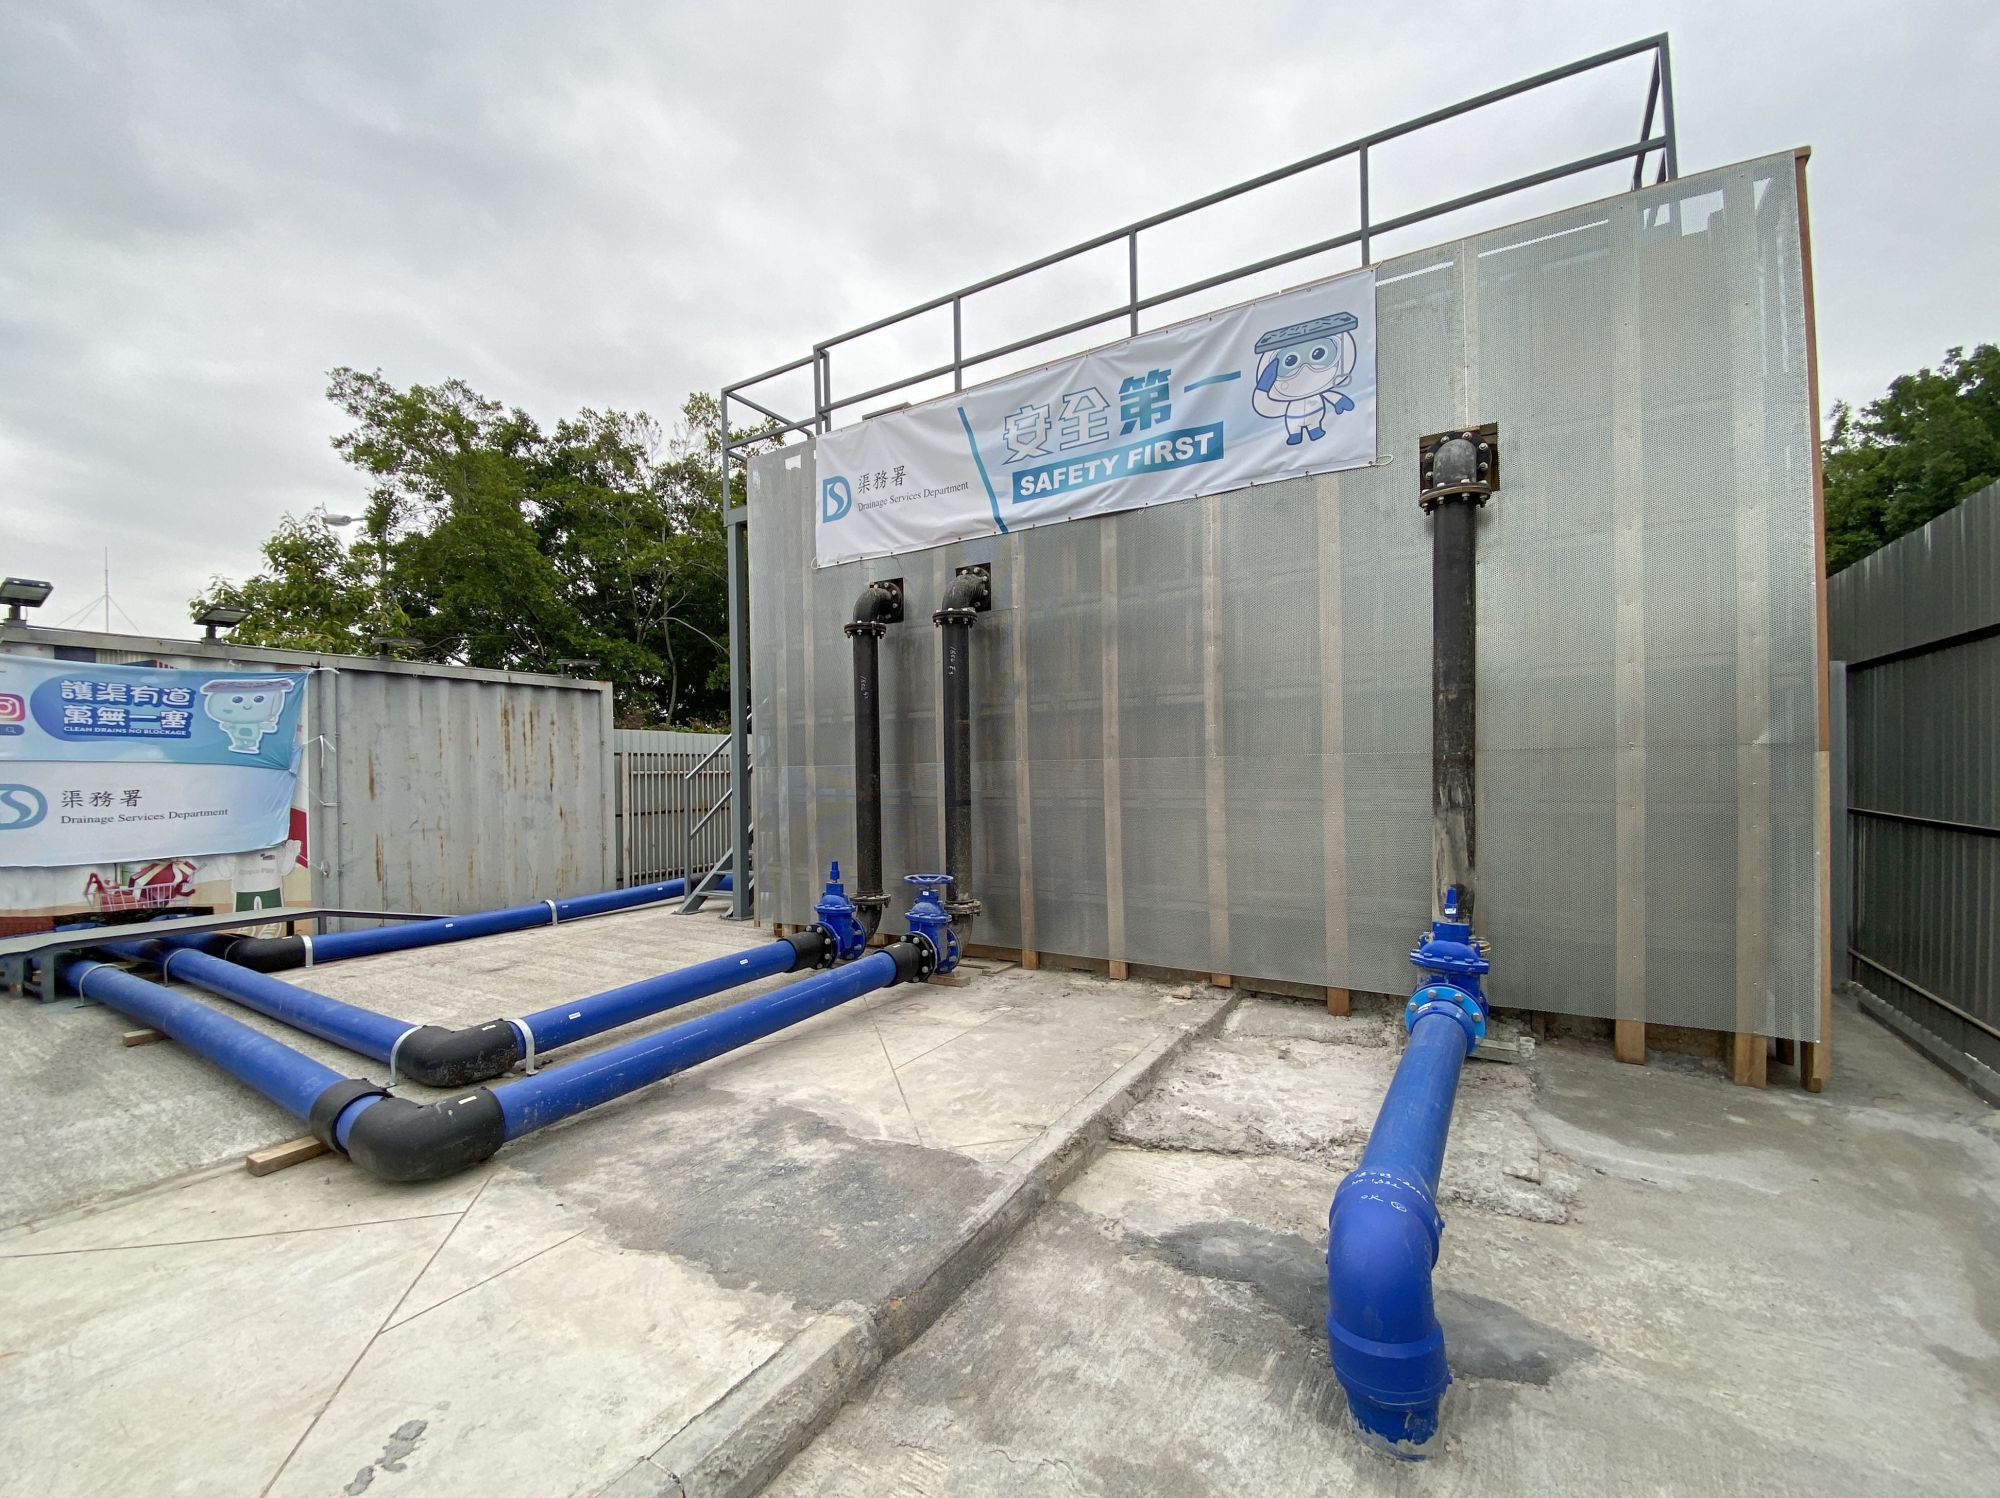 新田小区隔离设施的公共排污系统包括建造一所污水泵房、铺设1.8公里长的双管加压污水渠、安装机电设备等。